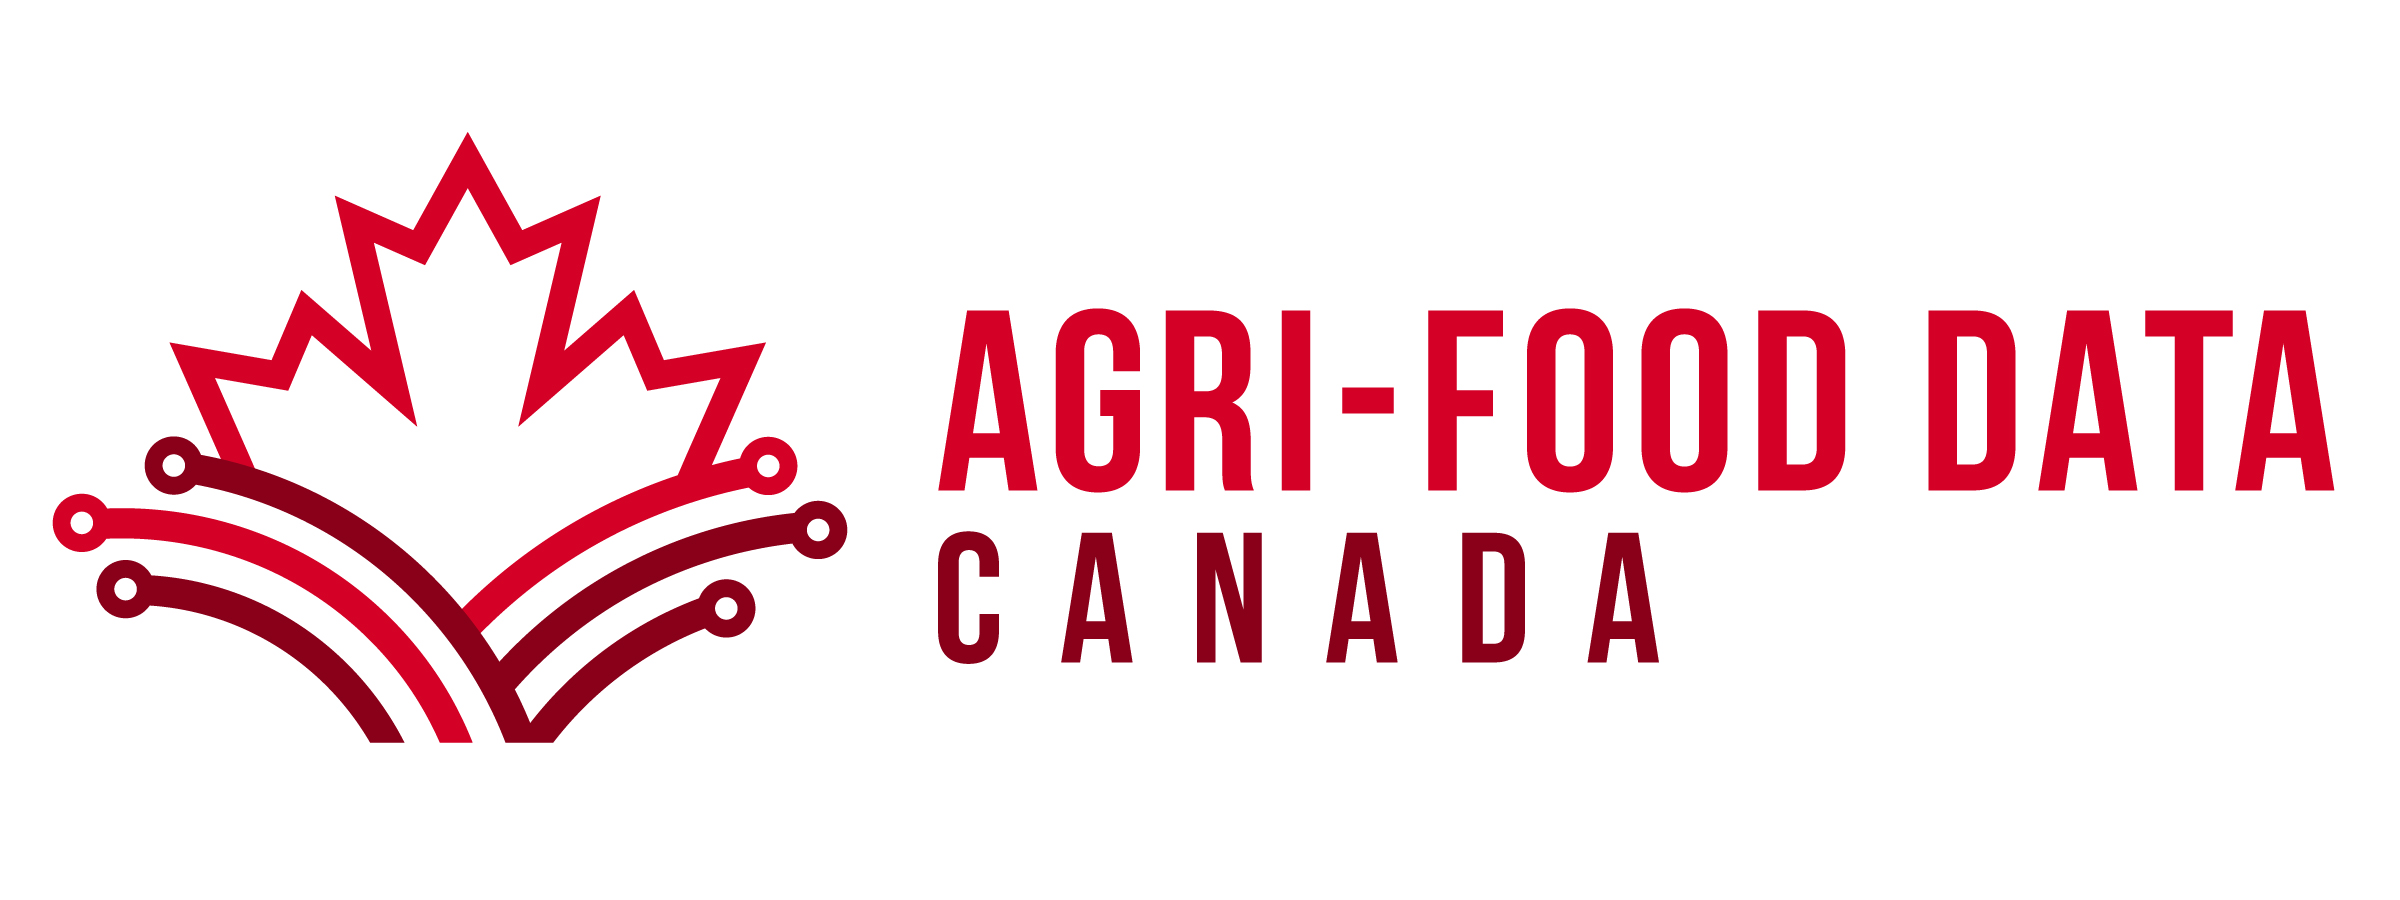 Agri-Food Data Canada